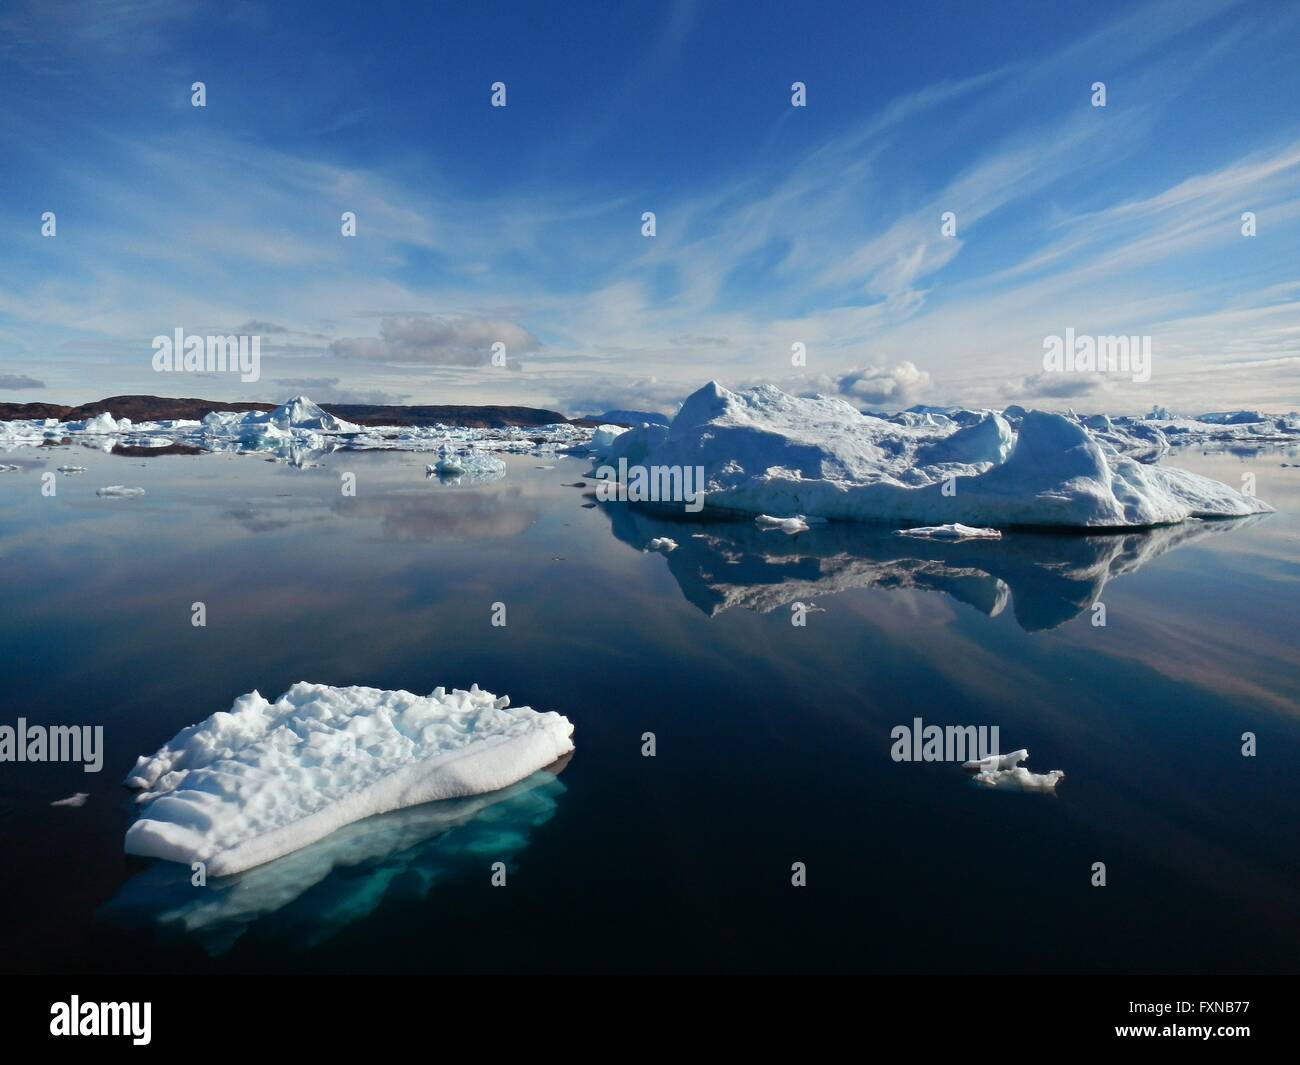 Los icebergs flotando fuera de la costa suroeste de Groenlandia durante la NASA TerraSond Cape Race batimetría encuesta agosto 9, 2015. El estudio mide el deshielo debido al cambio climático en la capa de hielo de Groenlandia. Foto de stock